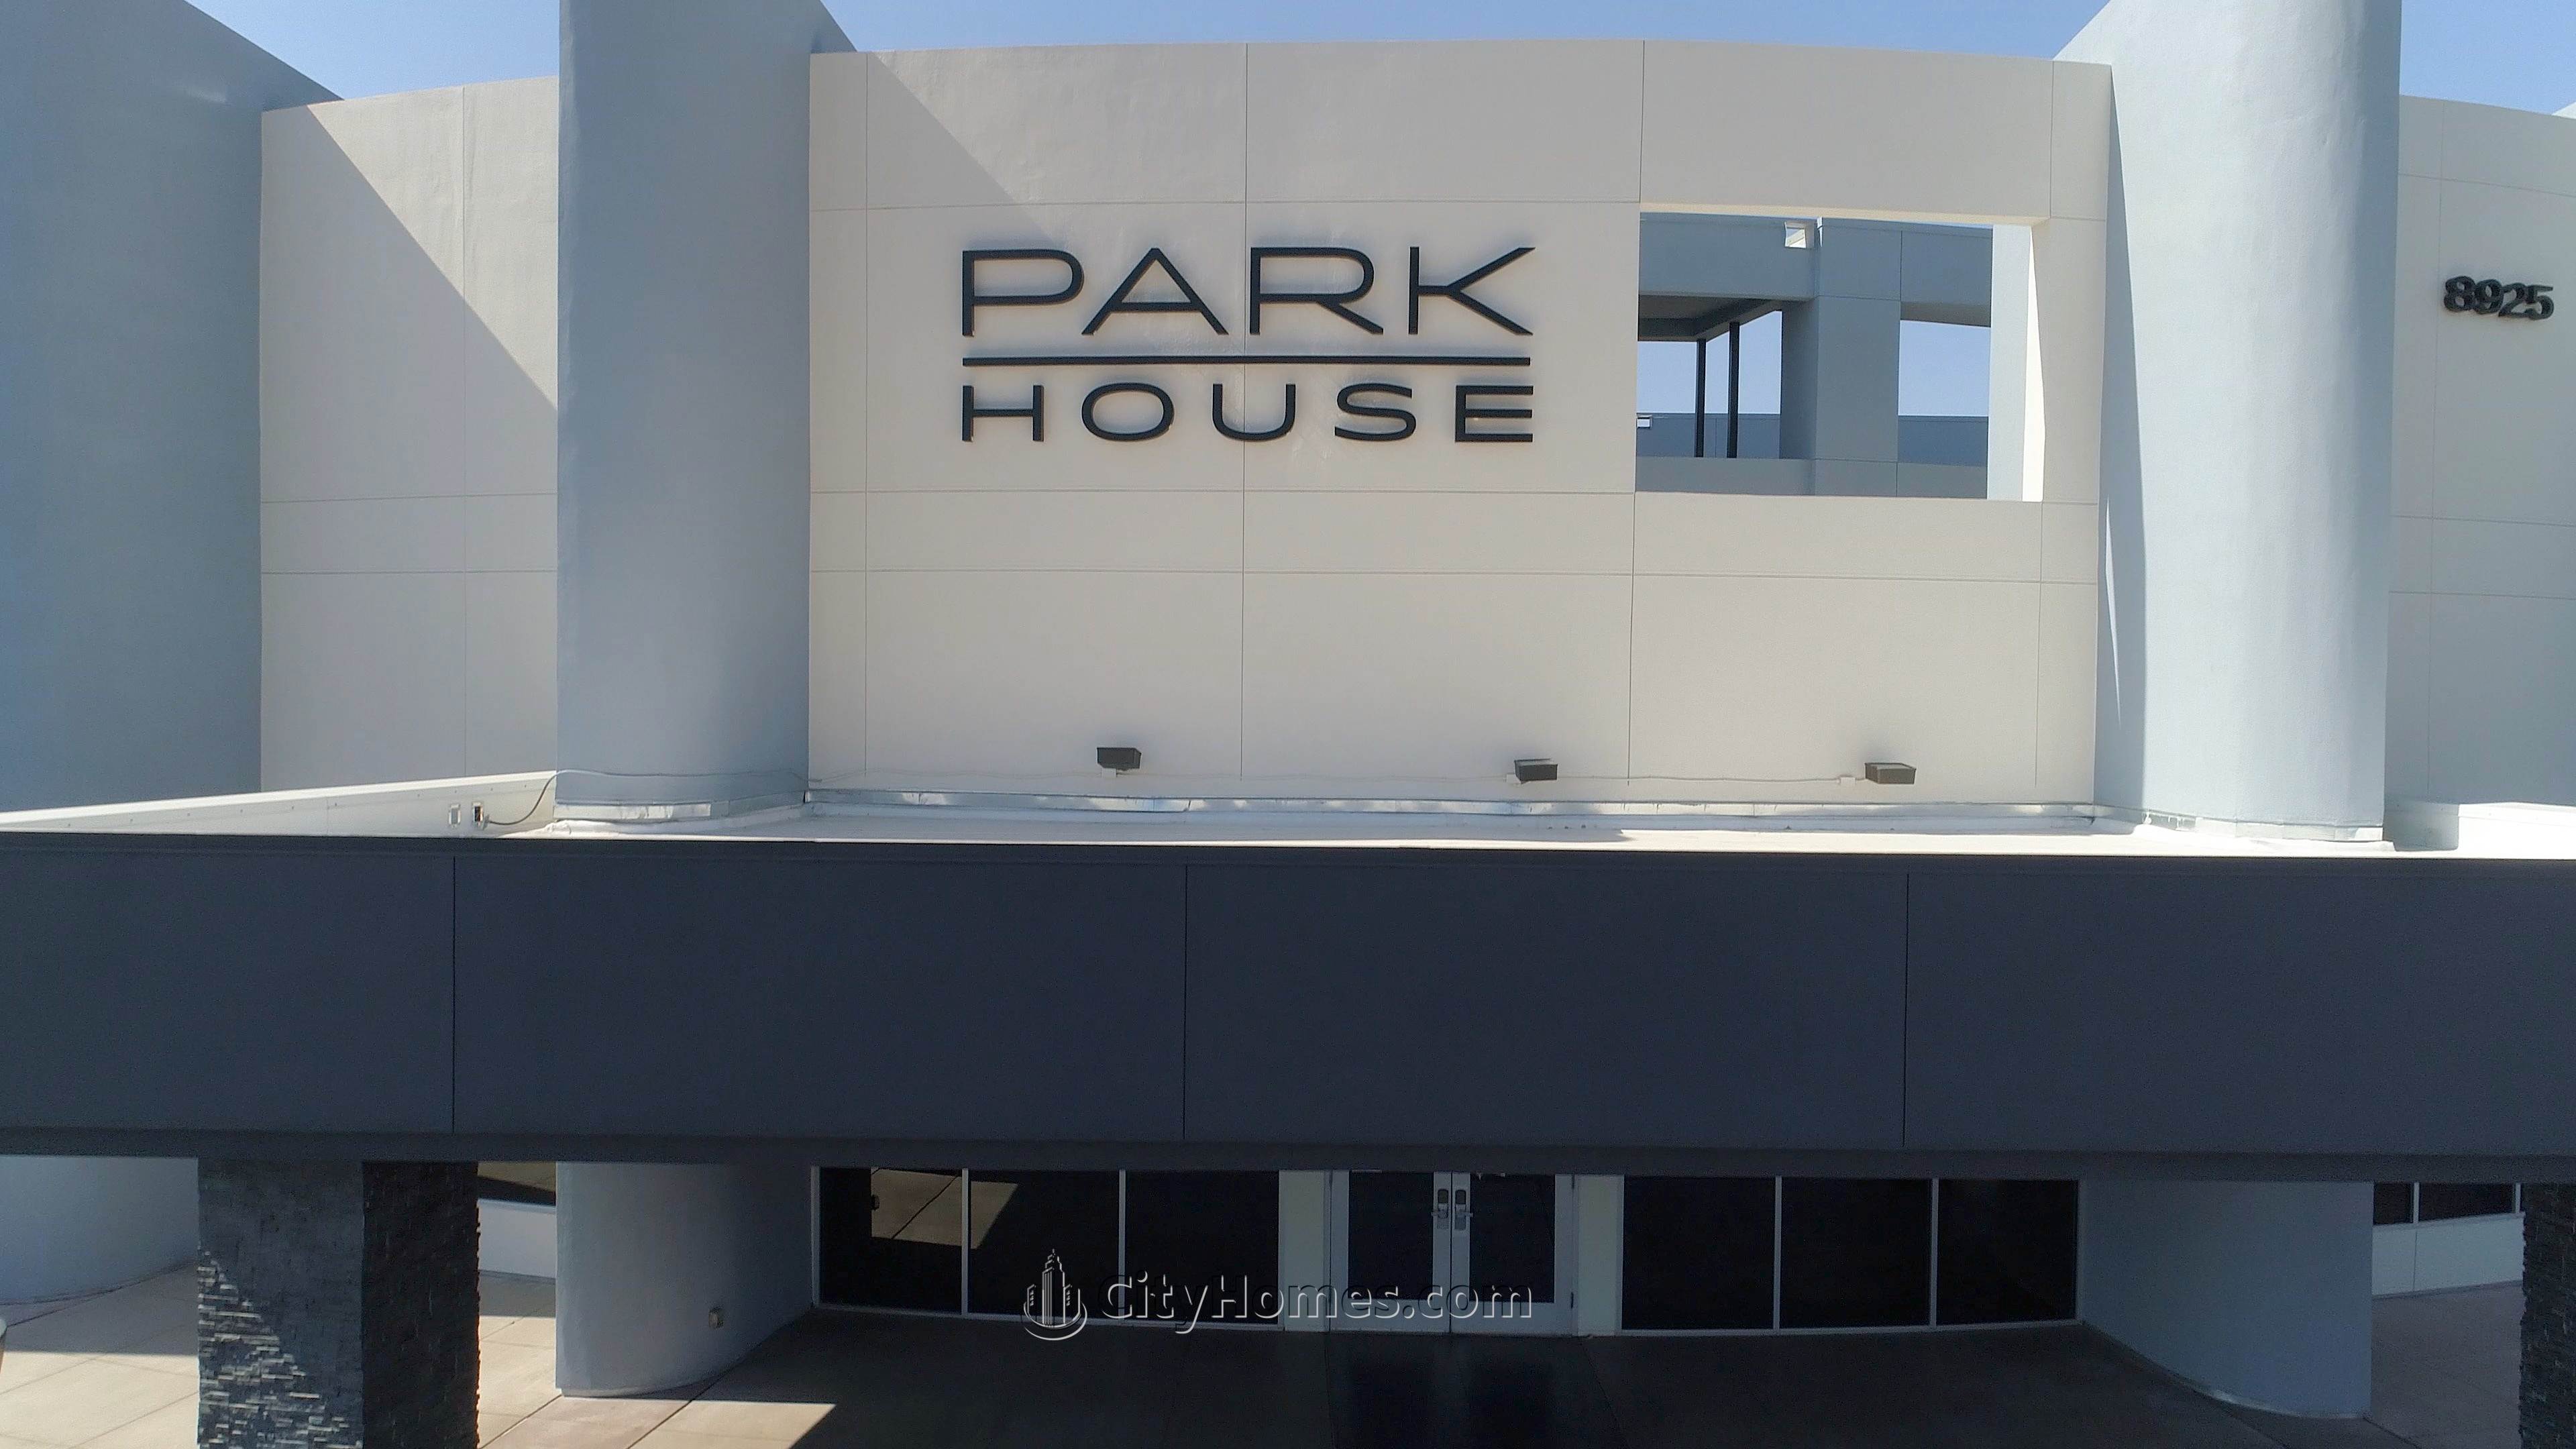 Park House building at 8925 W Flamingo Rd, Las Vegas, NV 89147